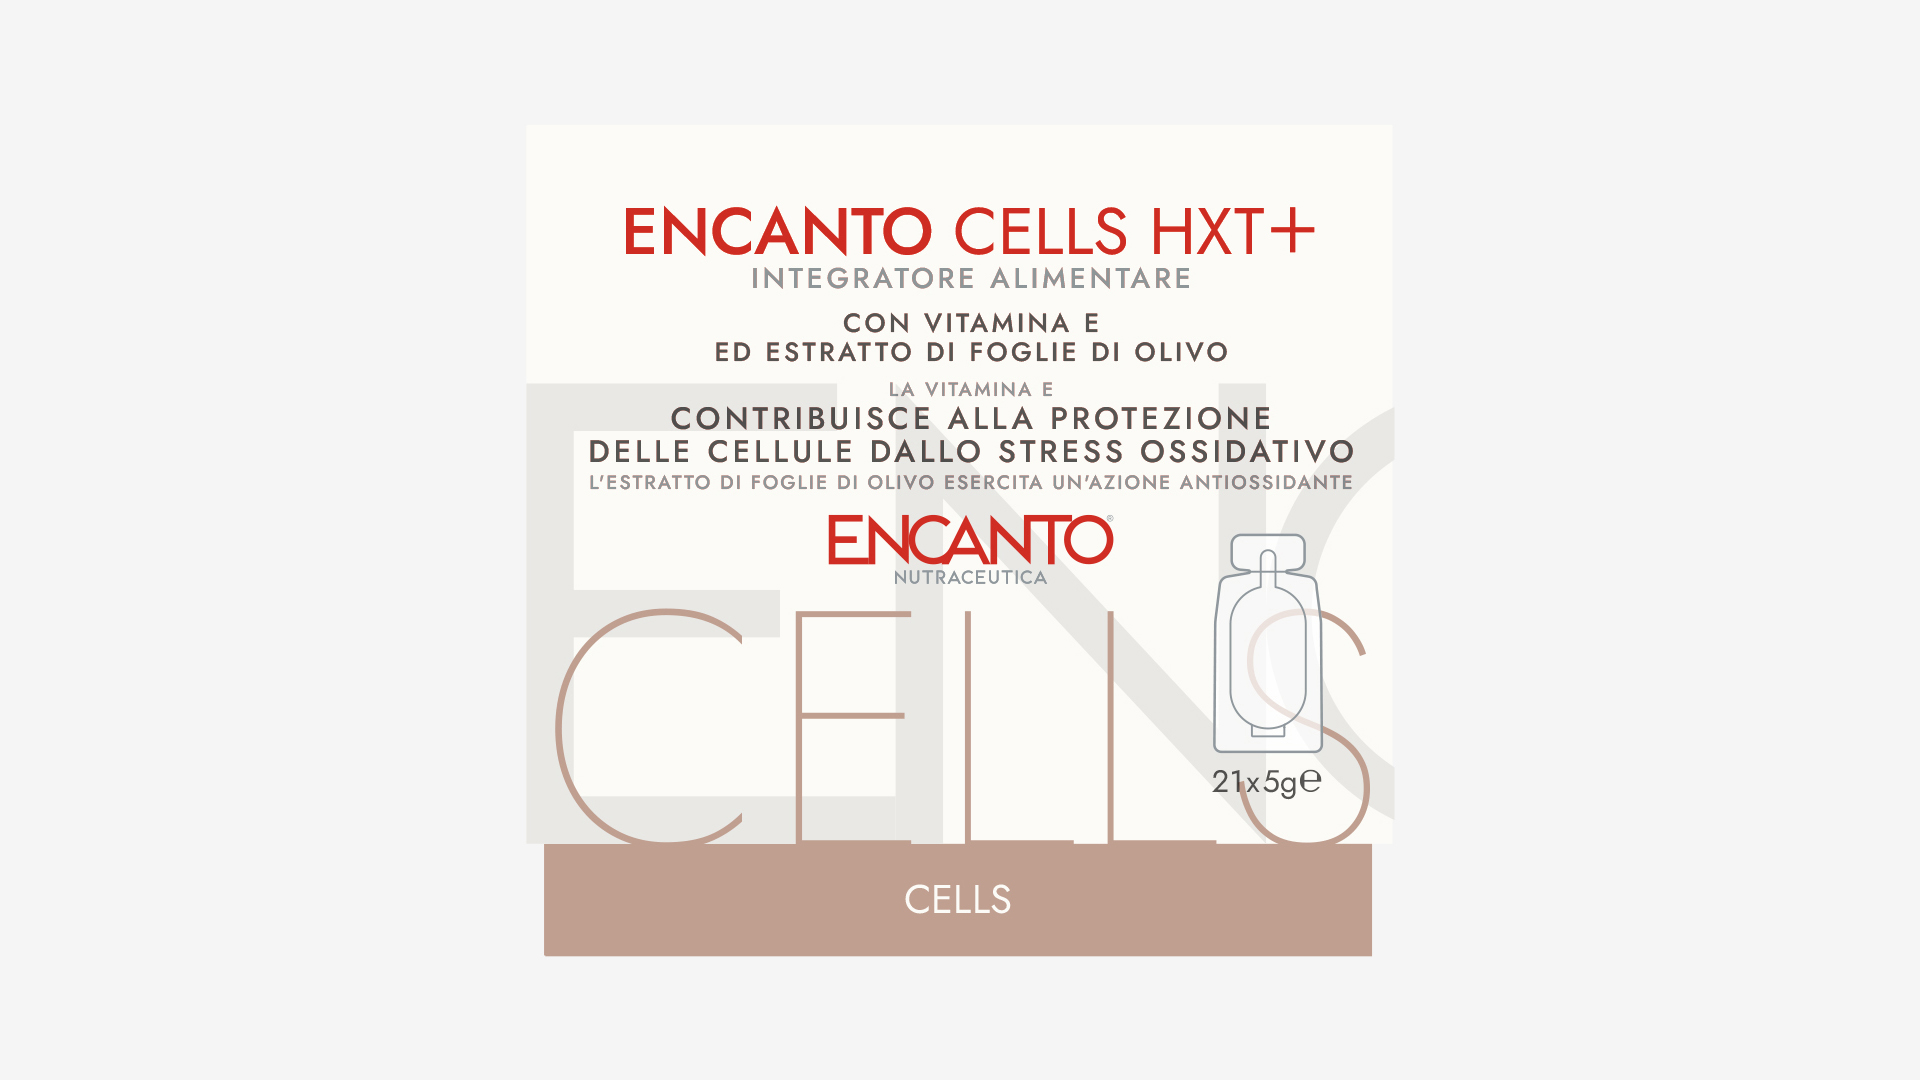 cells hxt+